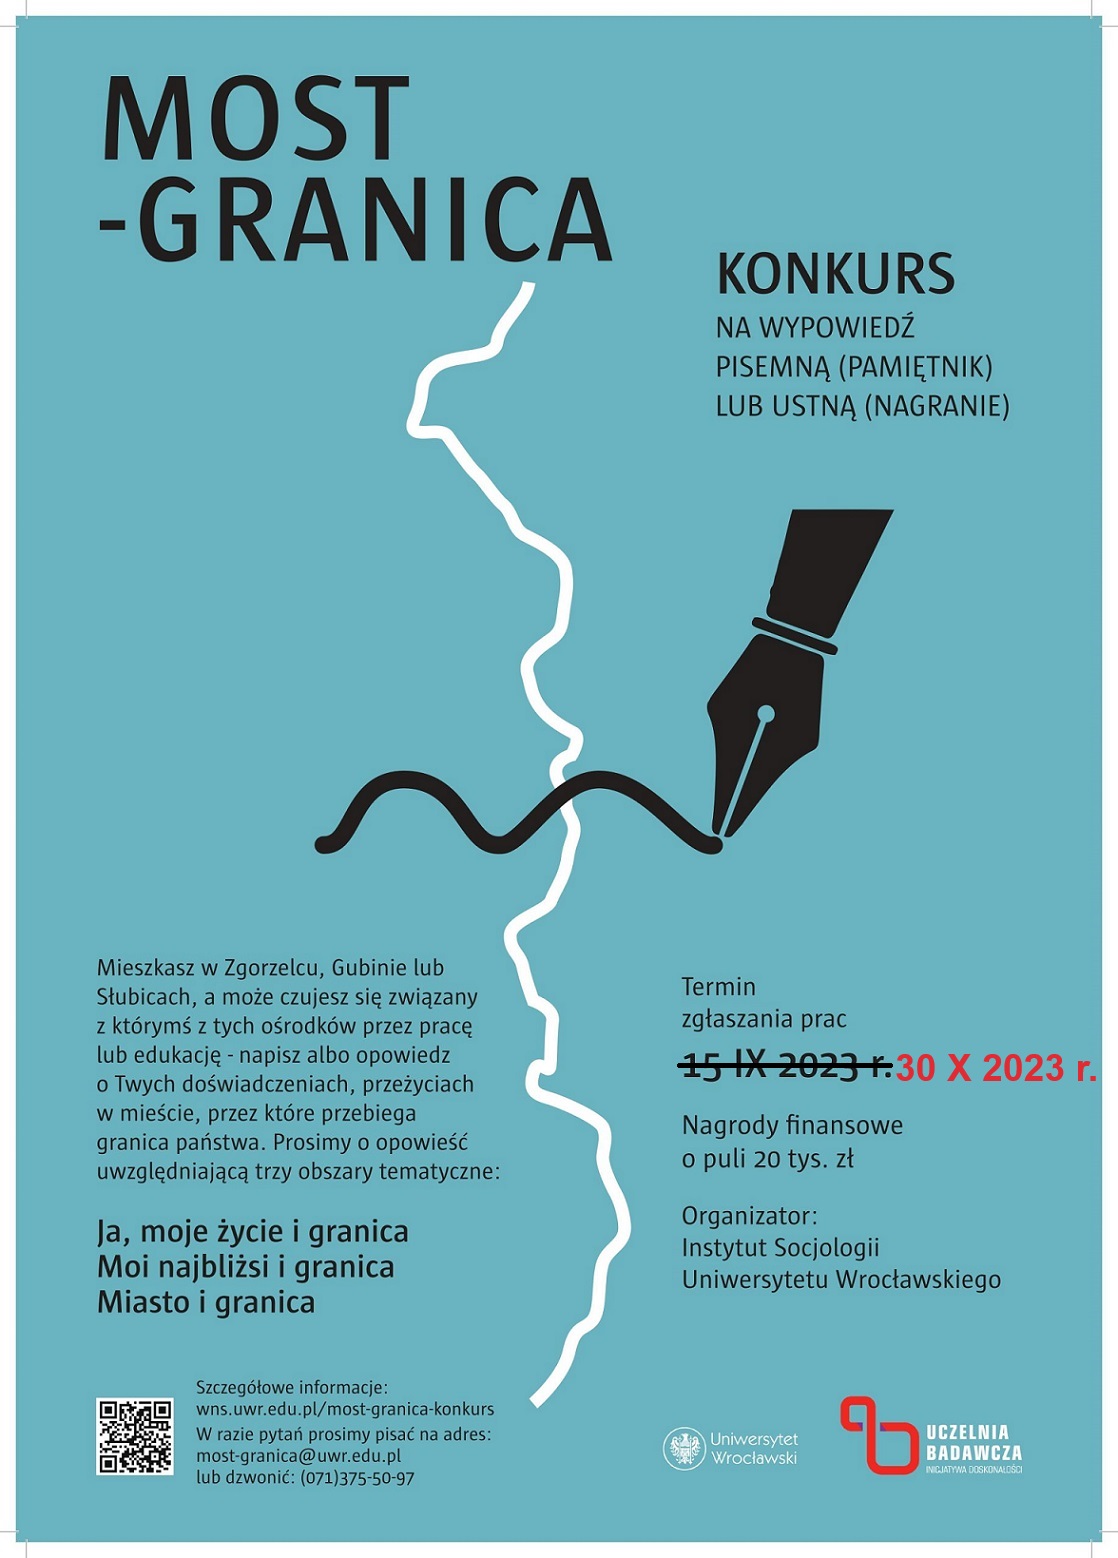 Plakat promujący konkurs na pamiętnik "Most-granica" z poprawionym terminem składania prac konkursowych: 30 X 2023 r. Plakat jest odnośnikiem do wpisu o przedłużeniu terminu składania prac.